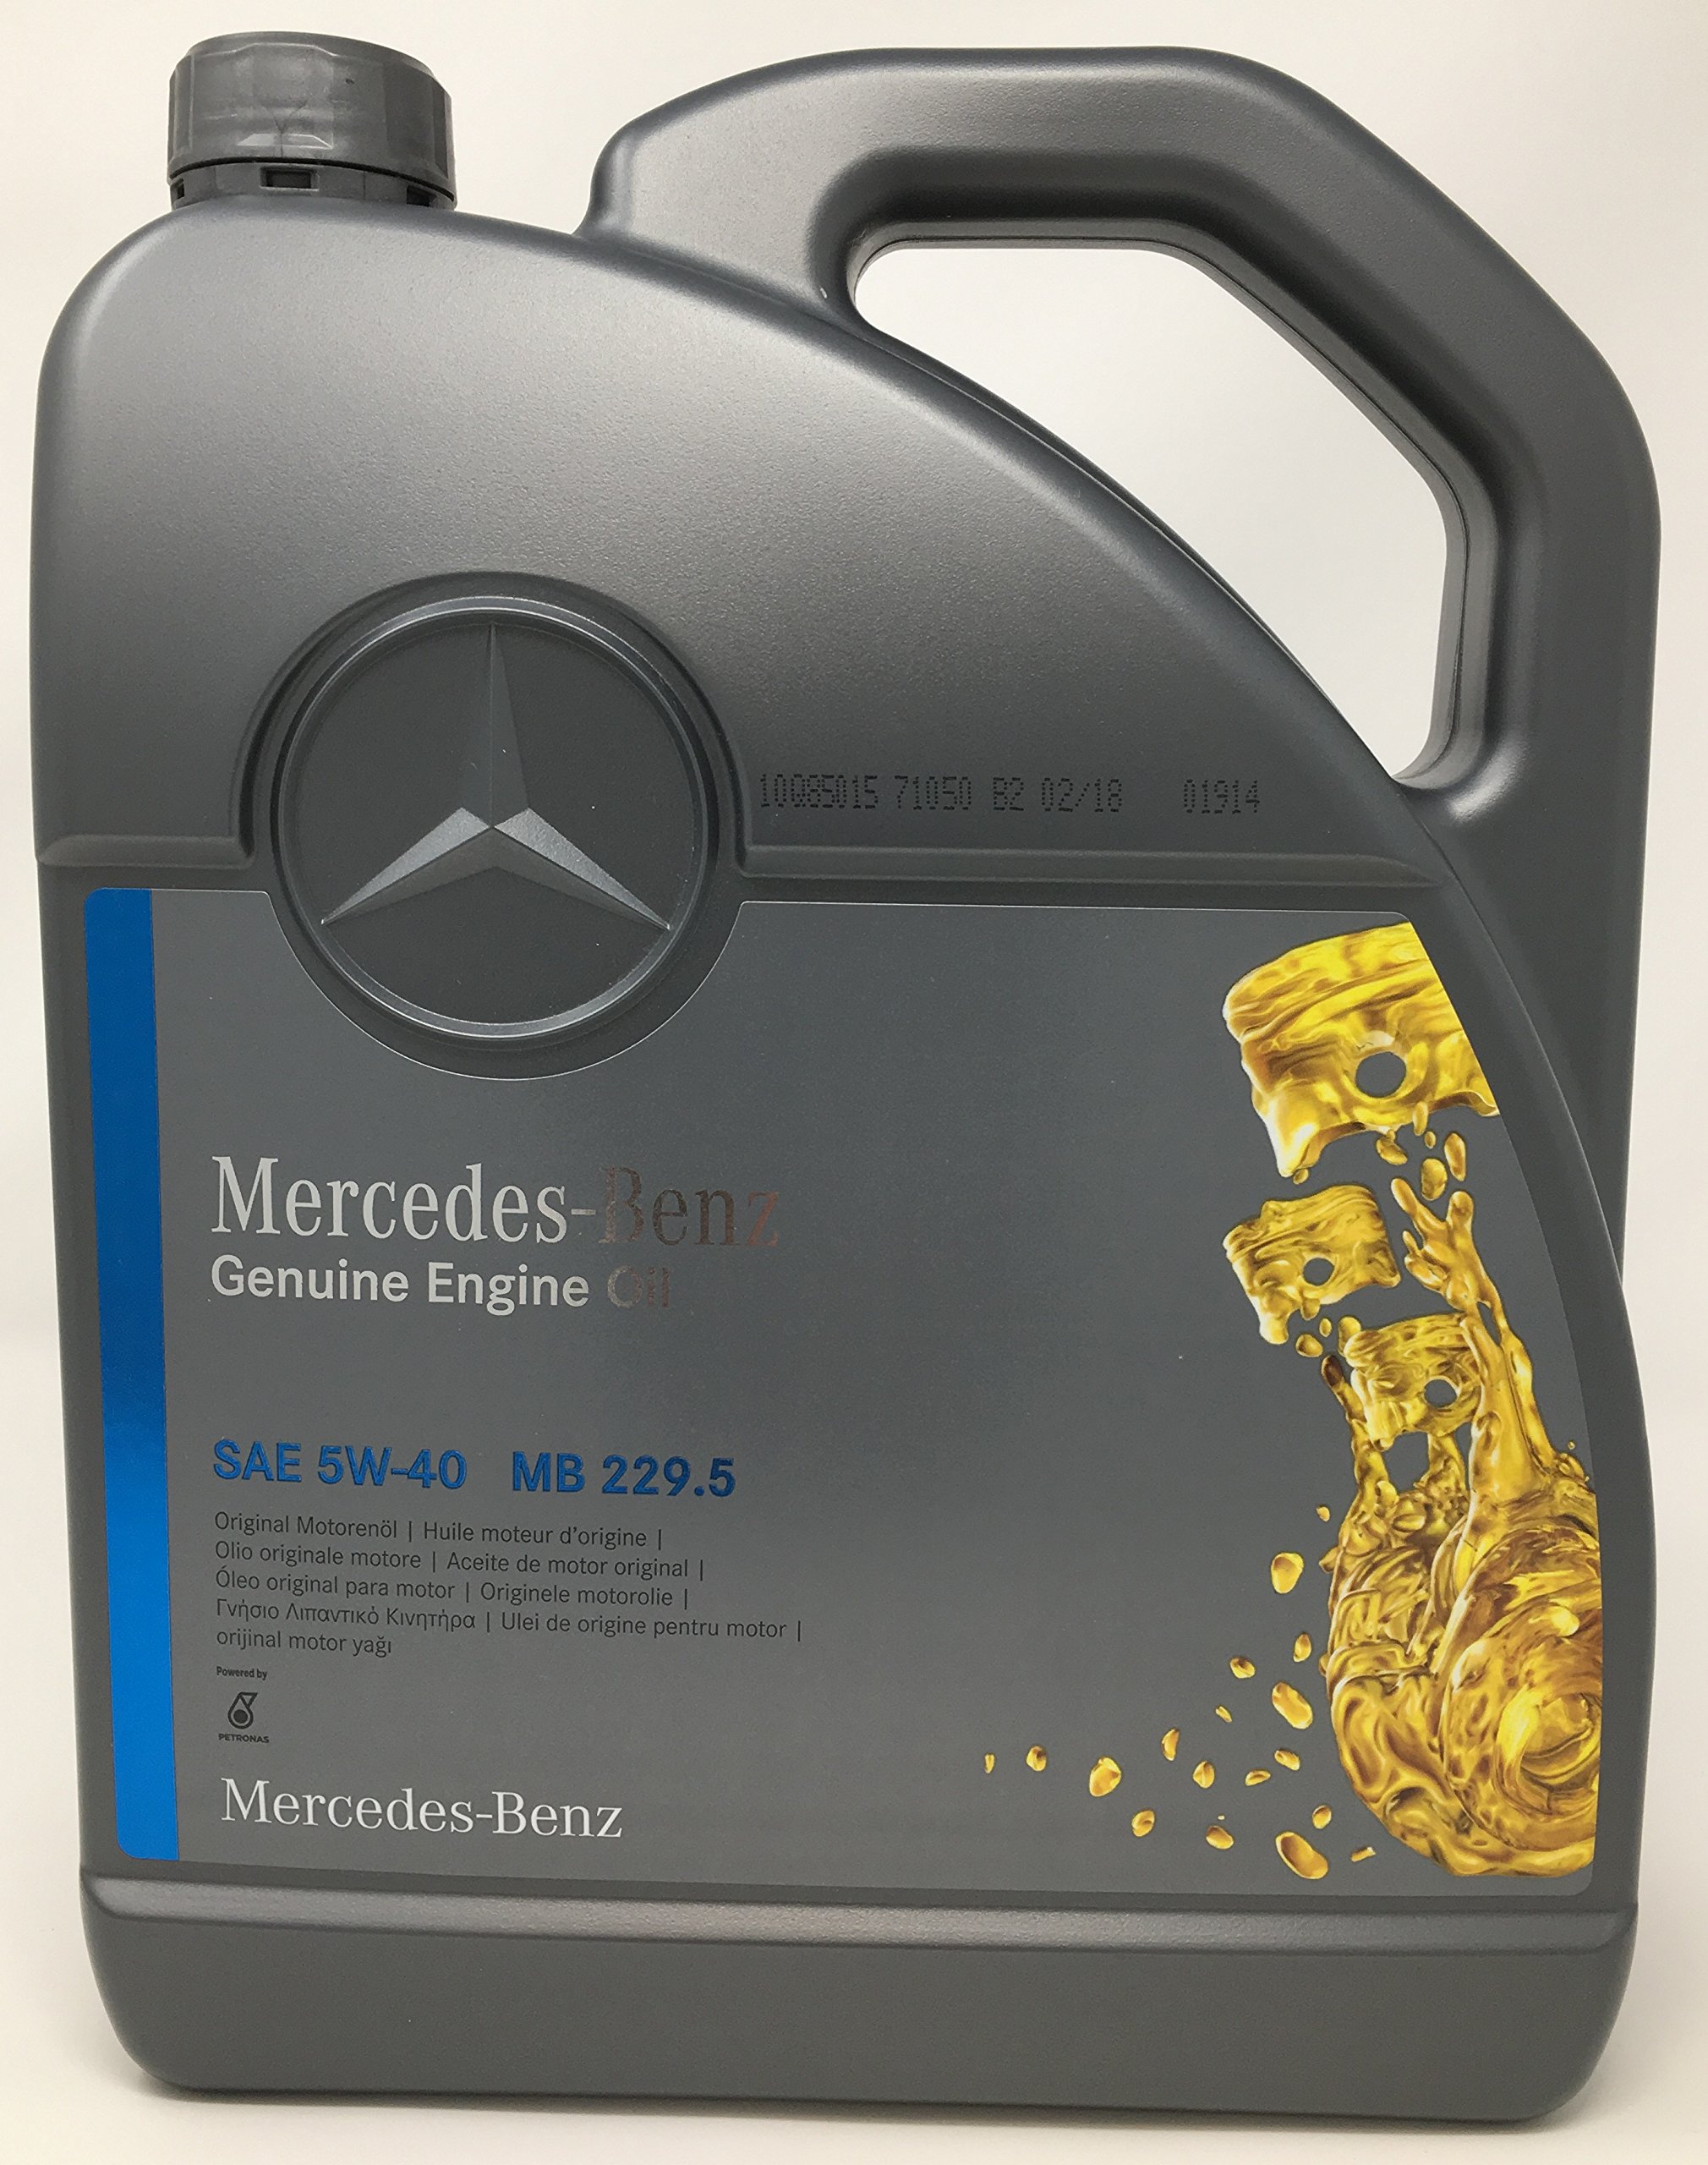 Motorenöl Mercedes Benz 229.5, 5W-40, 5 Liter